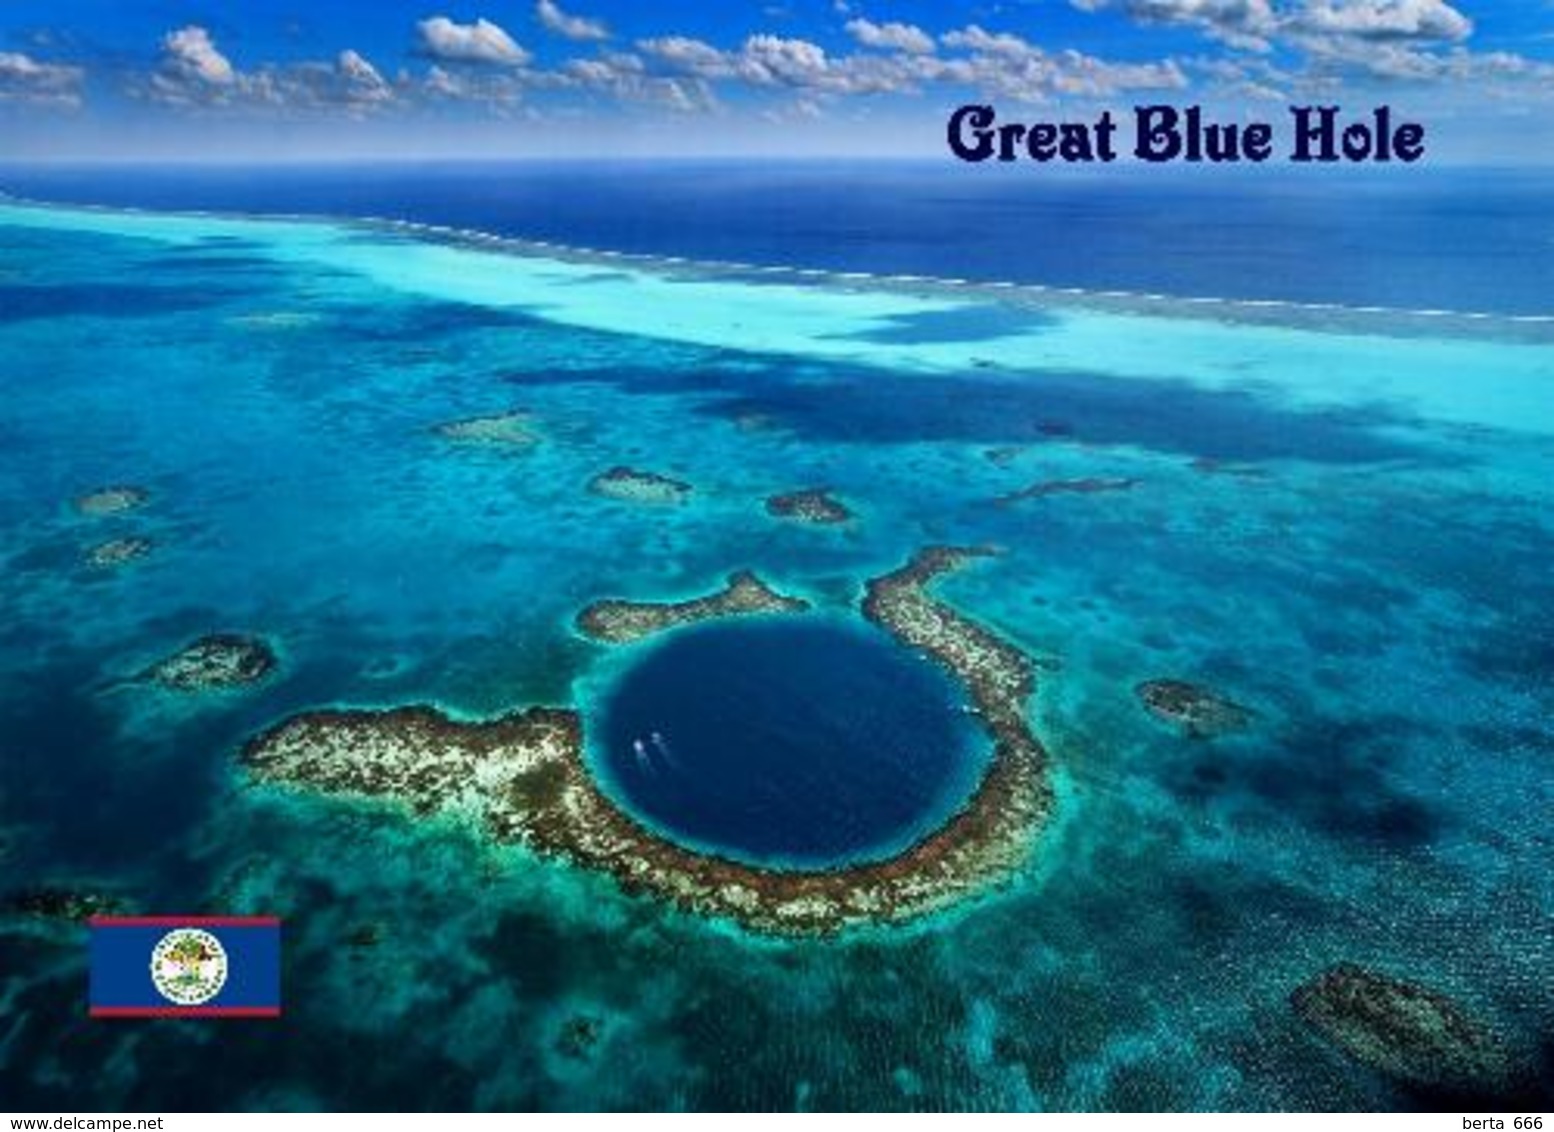 Belize Barrier Reef Great Blue Hole UNESCO New Postcard - Belize